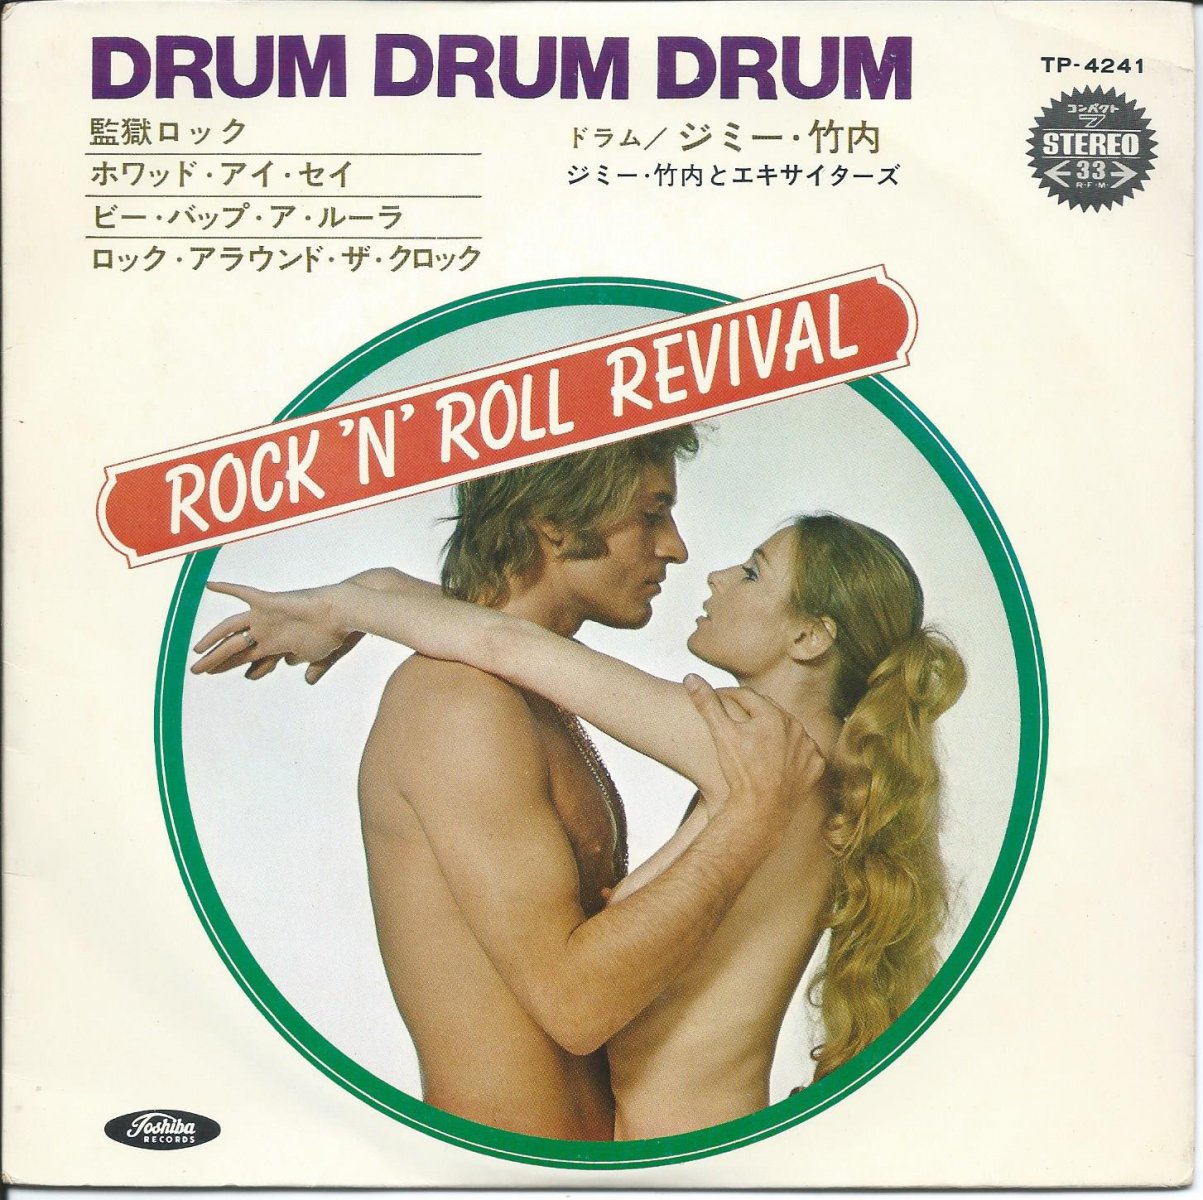 ジミー竹内 (ドラム)とエキサイターズ (JIMMY TAKEUCHI) / ドラム・ドラム・ドラム DRUM DRUM DRUM - ROCK'N'ROLL REVIVAL (7